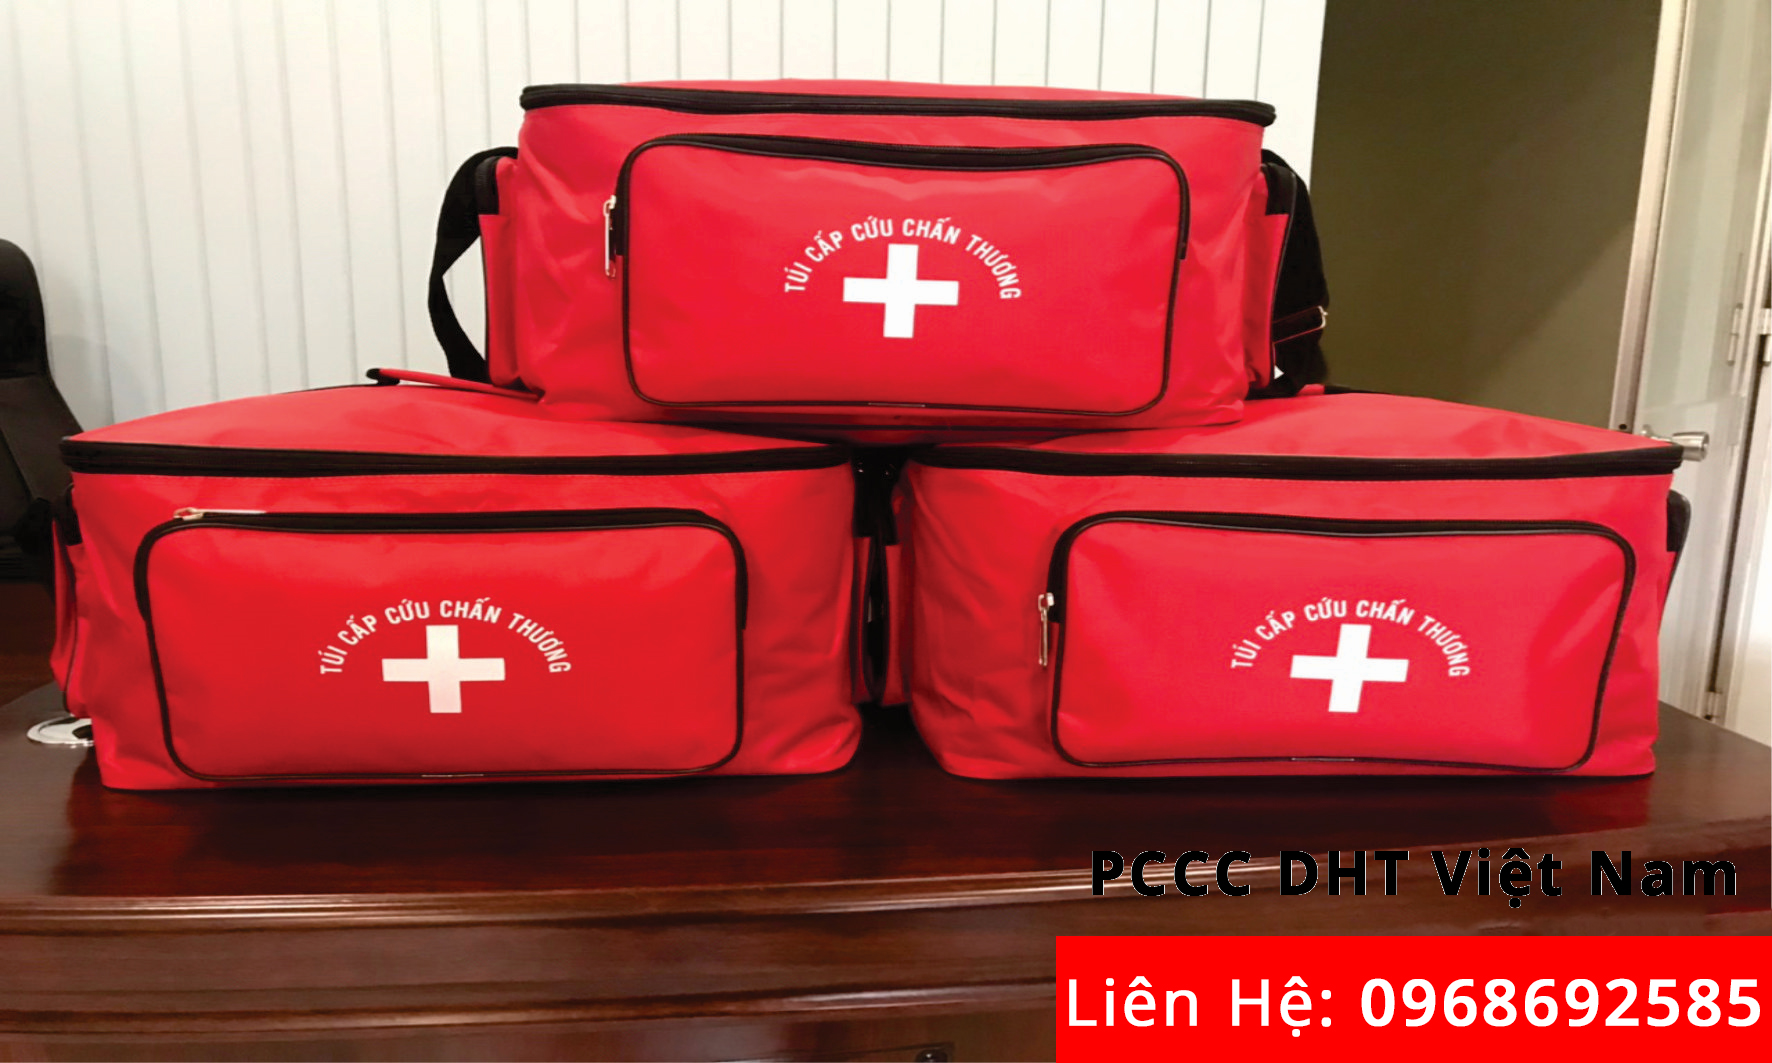 Liên hệ với đơn vị cung cấp túi cứu thương loại A tại KCN SƠN LÔI để sở hữu một chiếc túi chất lượng.